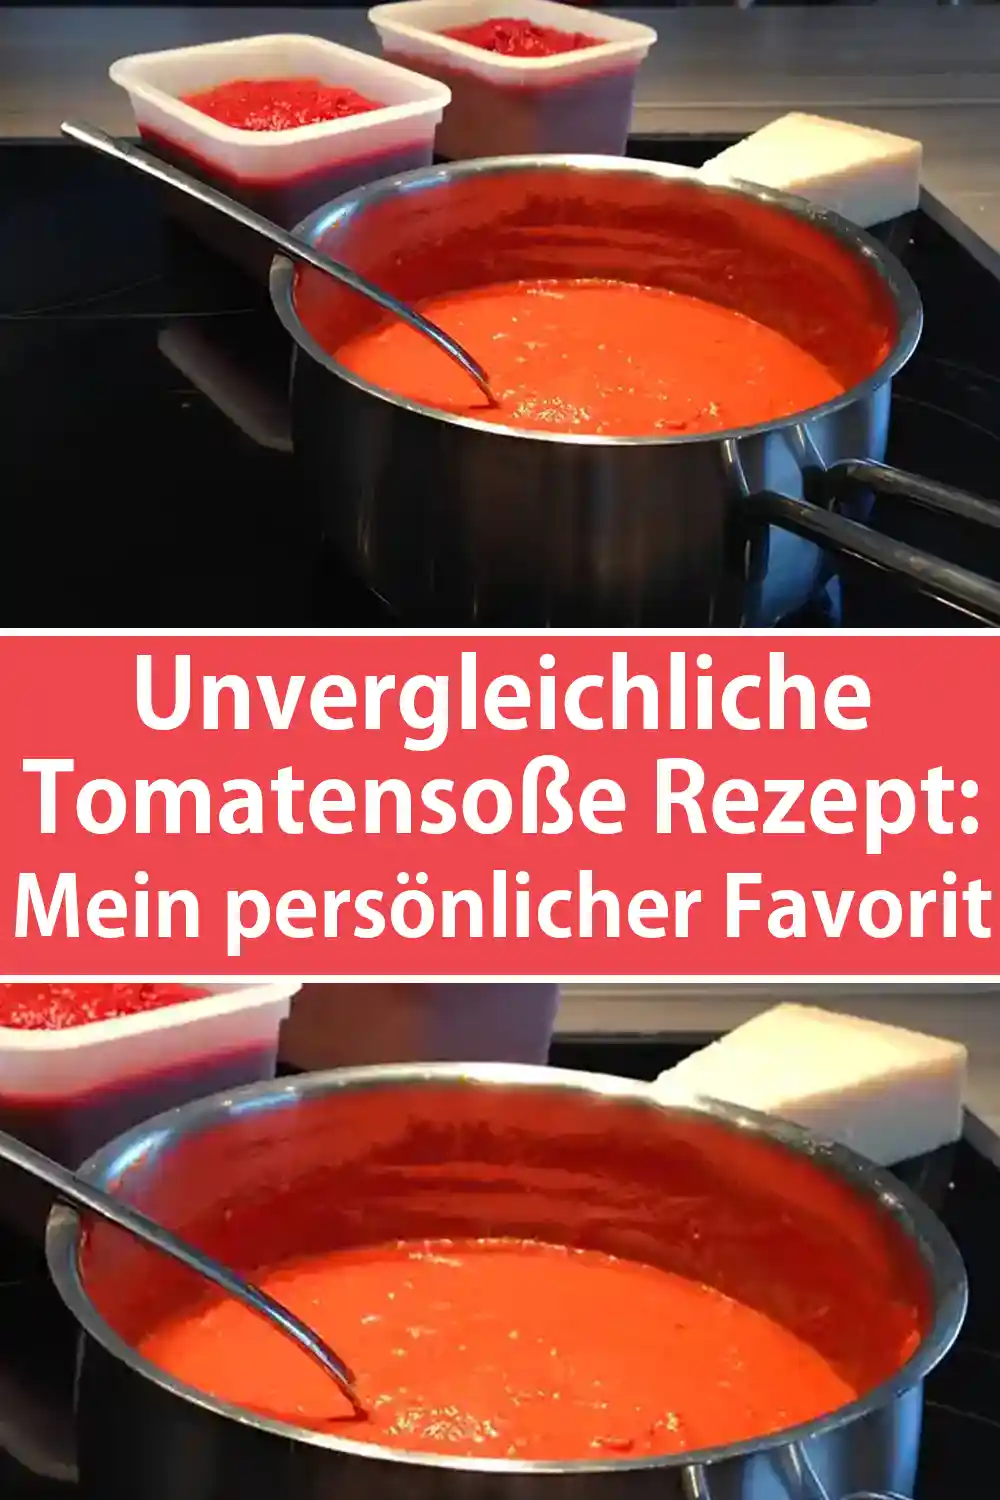 Unvergleichliche Tomatensoße Rezept: Mein persönlicher Favorit